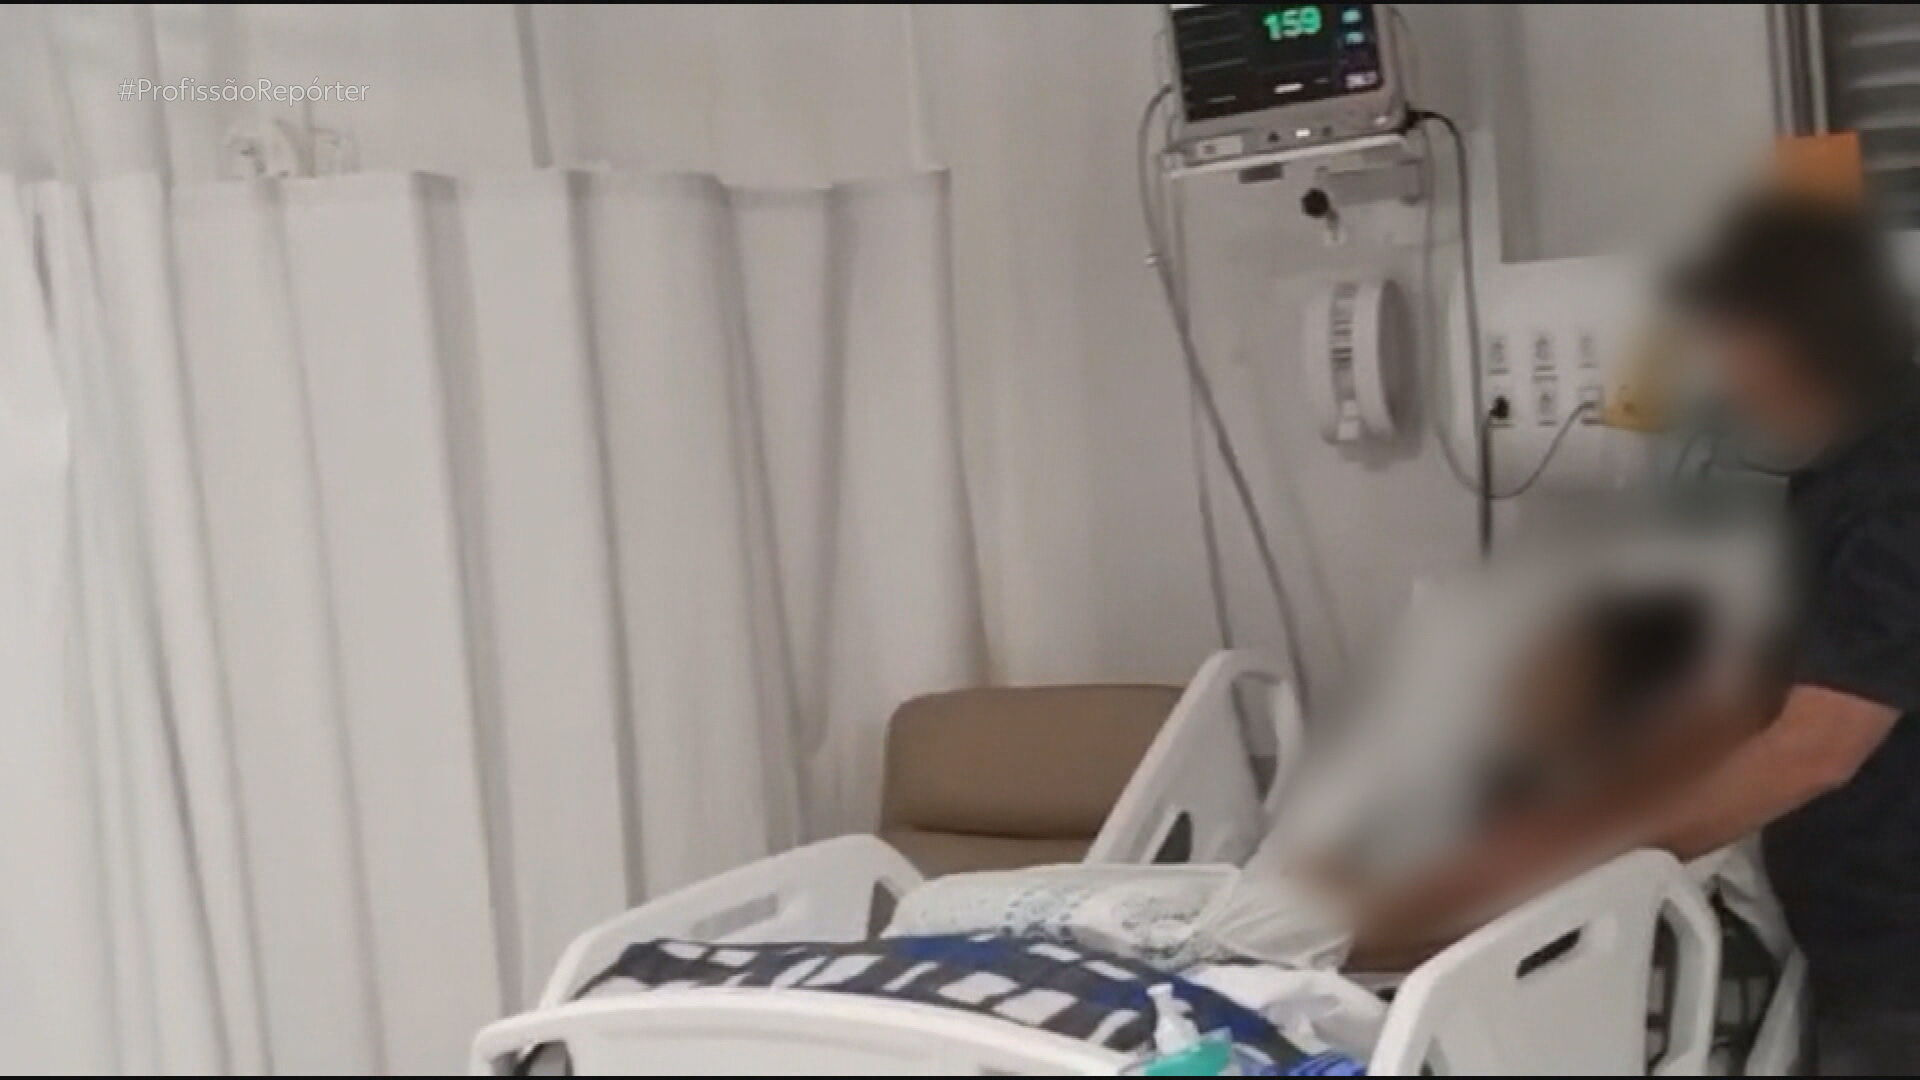 Pai é preso após ser filmado abusando da filha internada na UTI de hospital; equipe de enfermagem gravou vídeo e fez denúncia